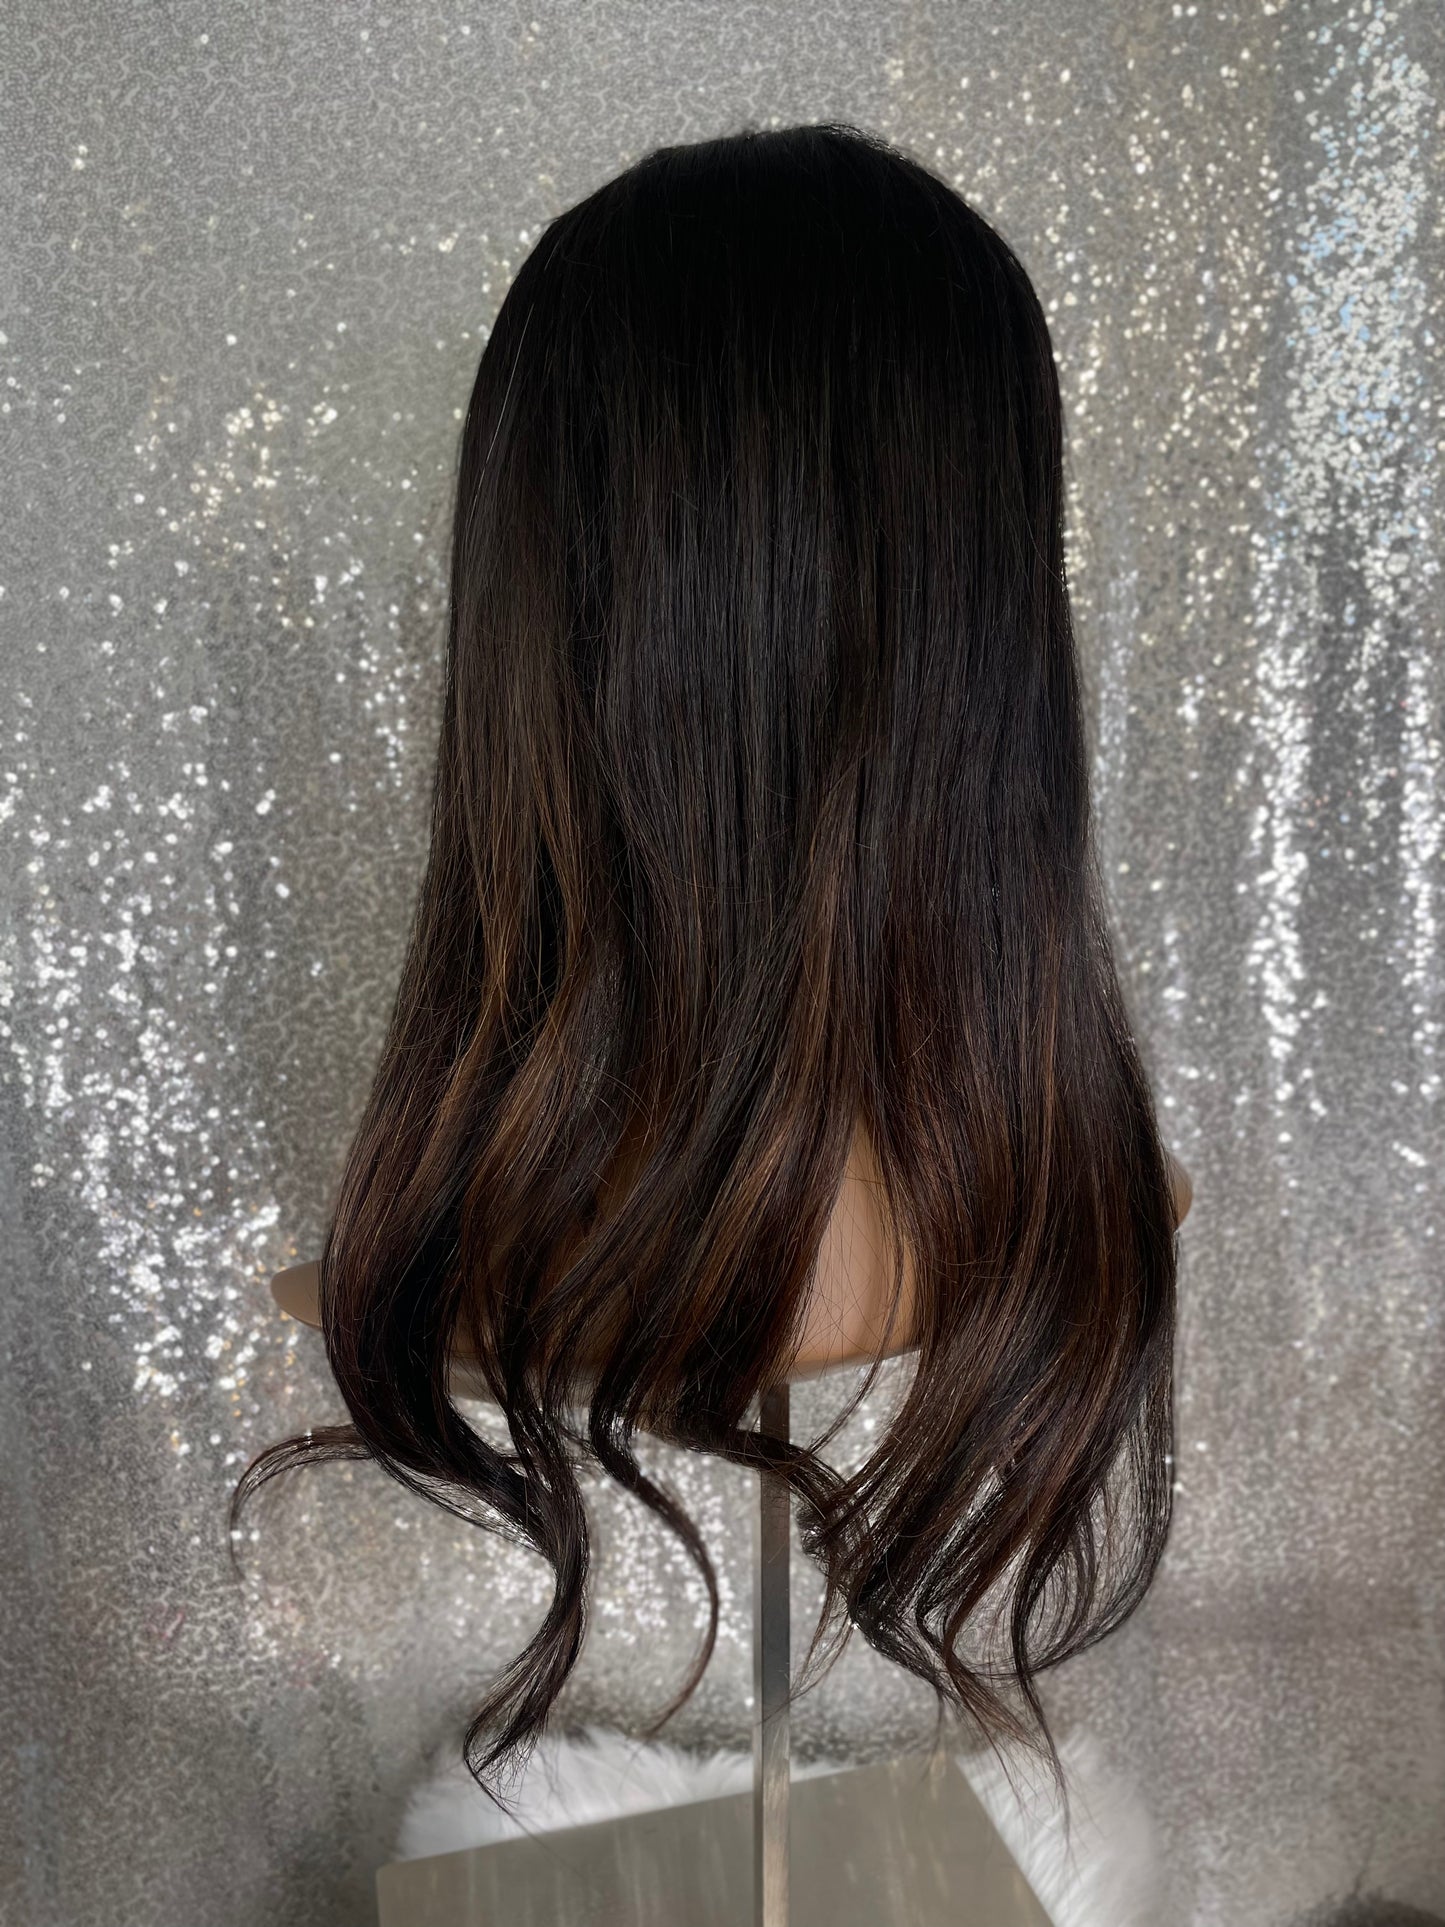 Topper Lana - 6x6 inch / 130% / 20 inch / european hair 